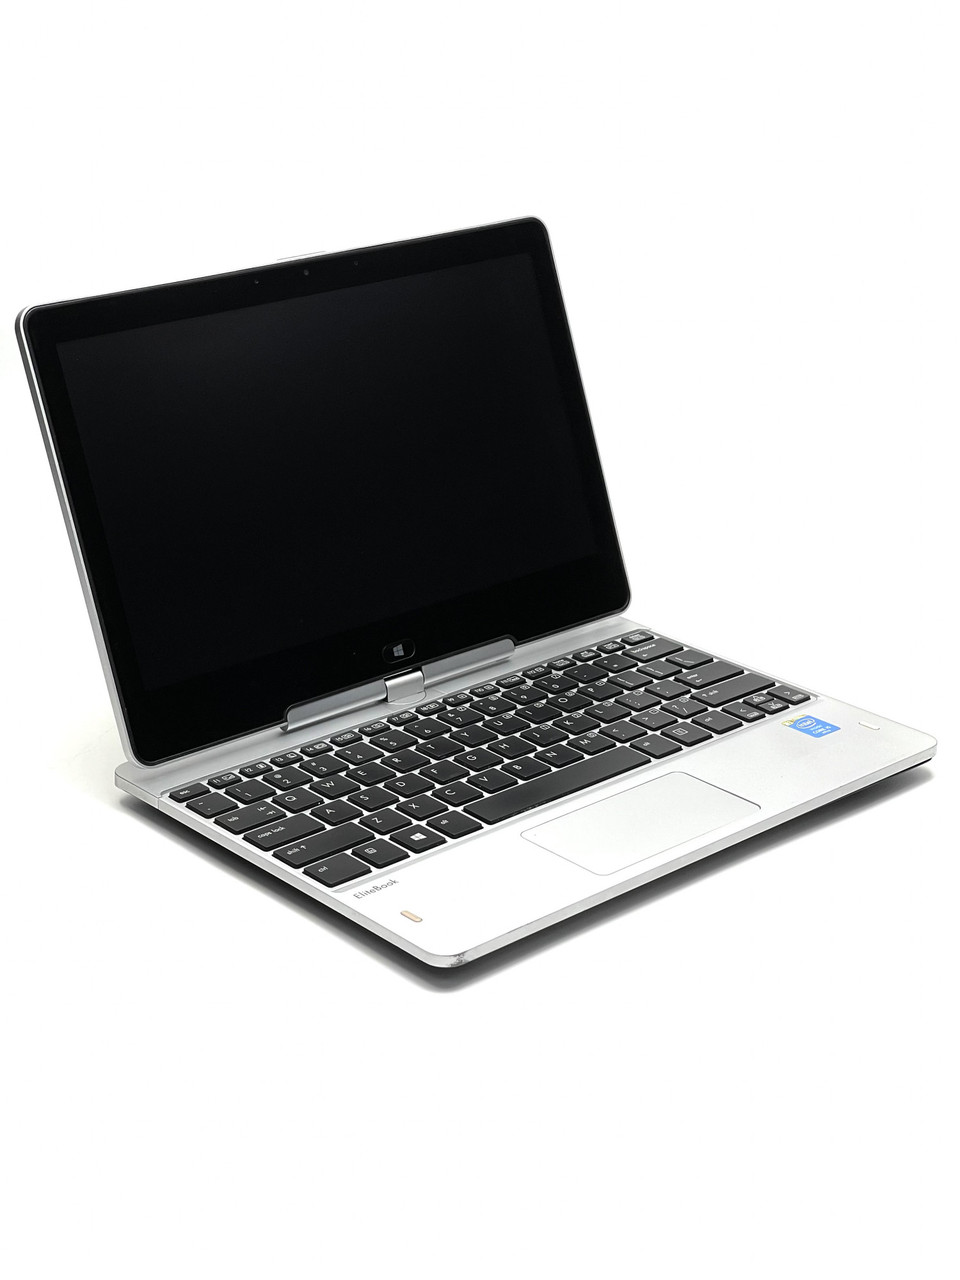 Ноутбук HP EliteBook 810 G3 12,5 Intel Core i5 4 Гб 256 Гб Refurbished